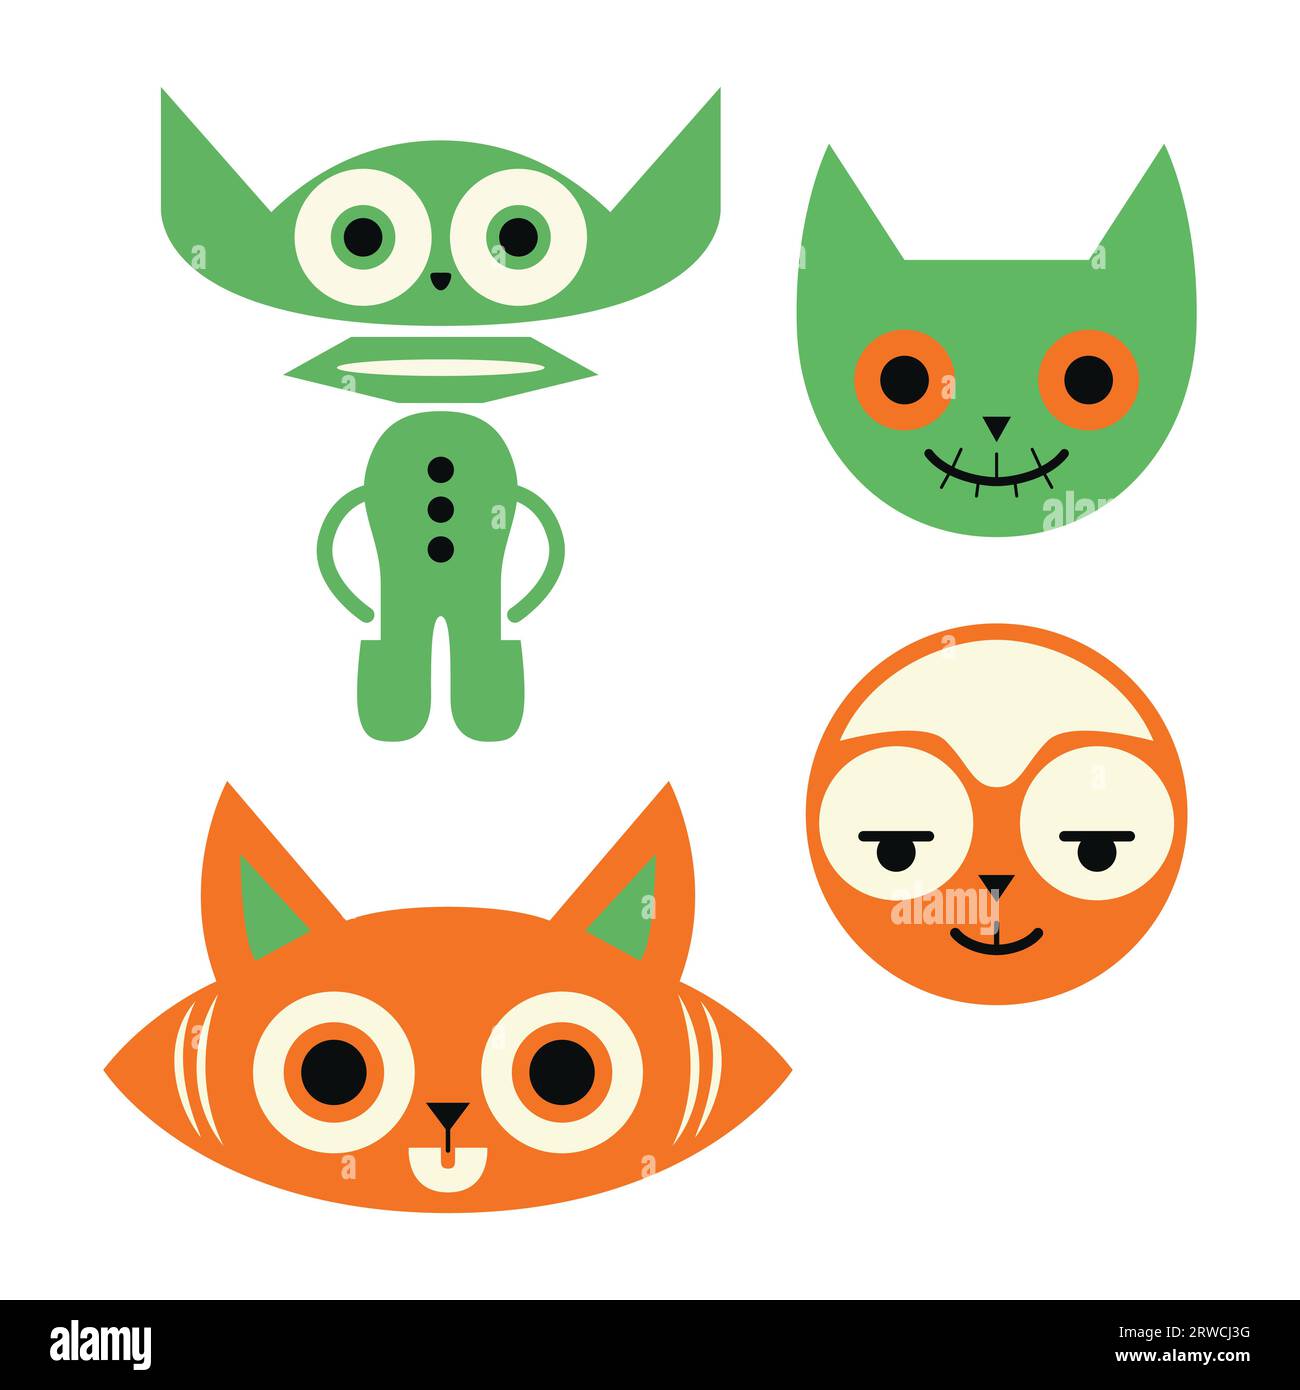 Quatuor de chat abstrait en orange foncé et vert clair avec masques et totems. Rêve d'illustrateur minimaliste pour des projets créatifs Illustration de Vecteur